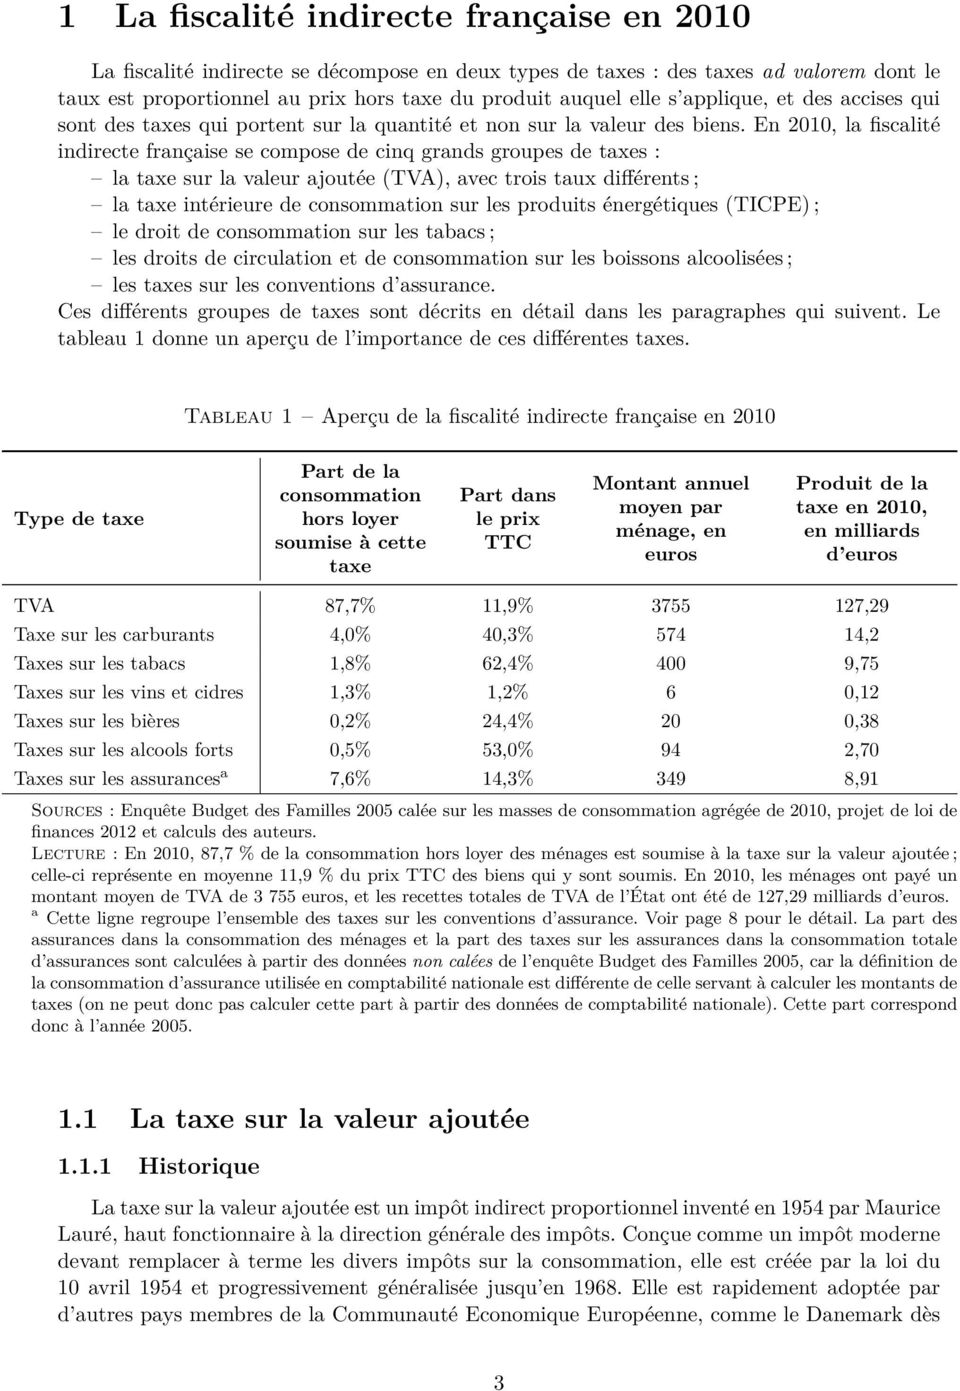 En 2010, la fiscalité indirecte française se compose de cinq grands groupes de taxes : la taxe sur la valeur ajoutée (TVA), avec trois taux différents ; la taxe intérieure de consommation sur les